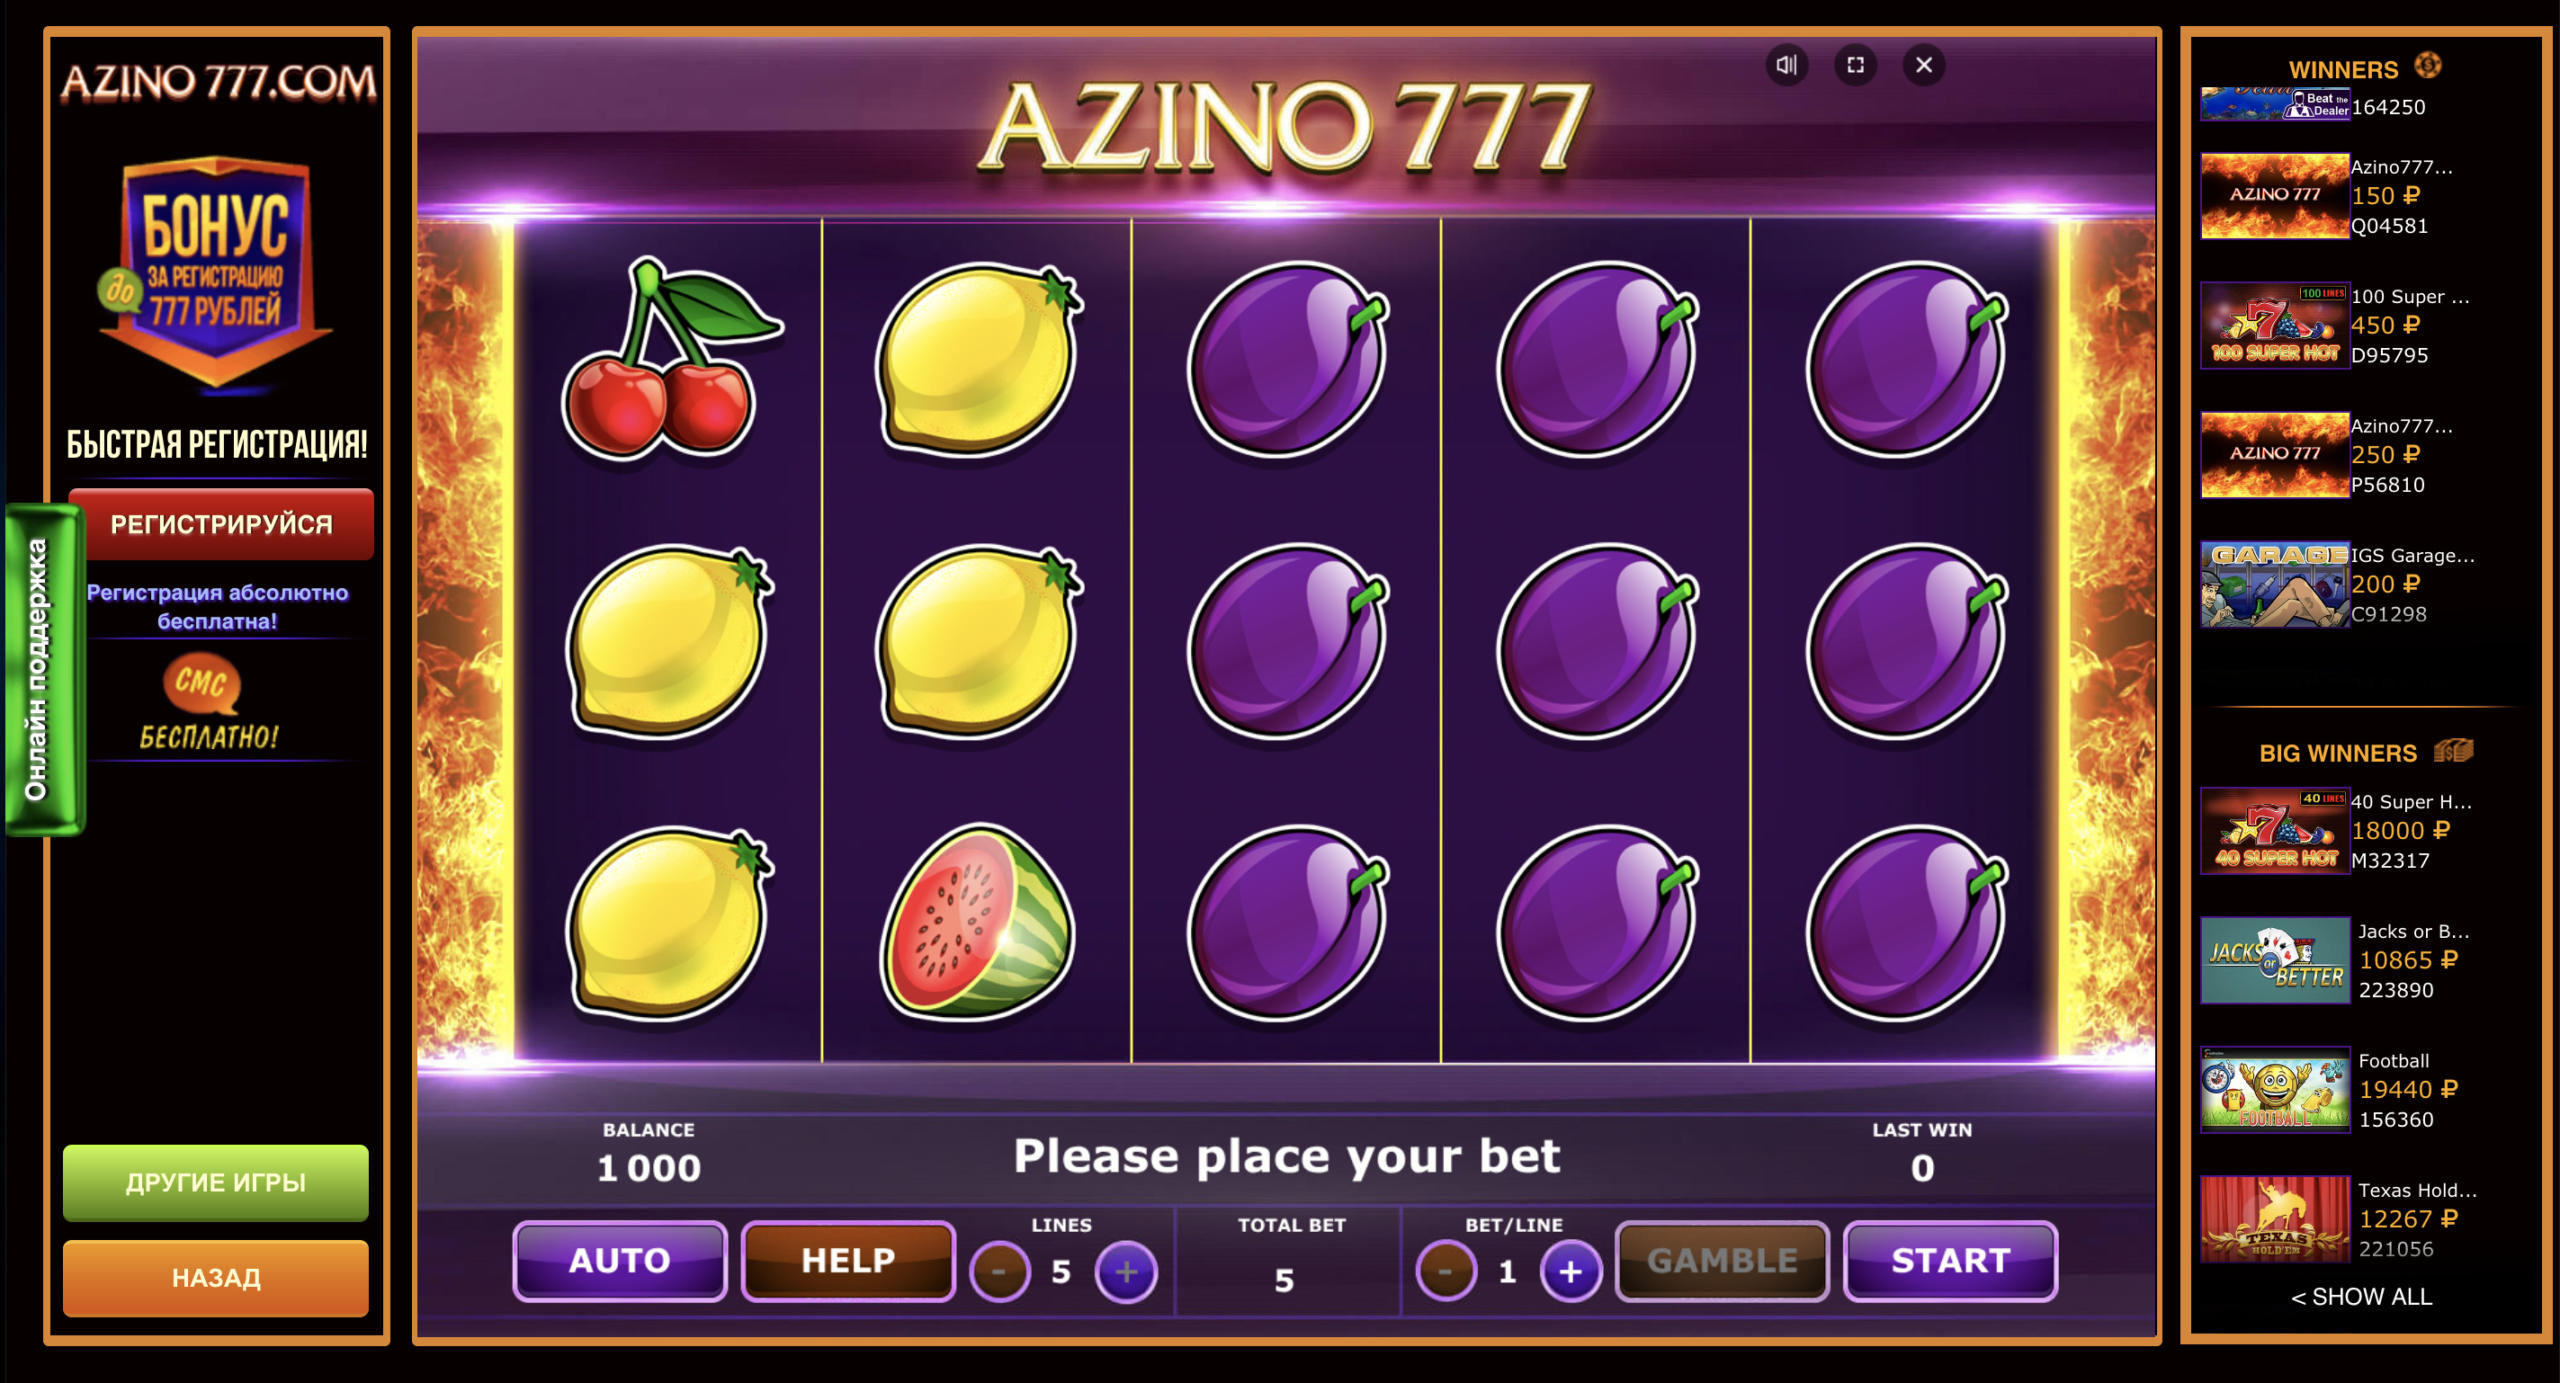 Какие слоты выбрать в онлайн казино Азино 777?